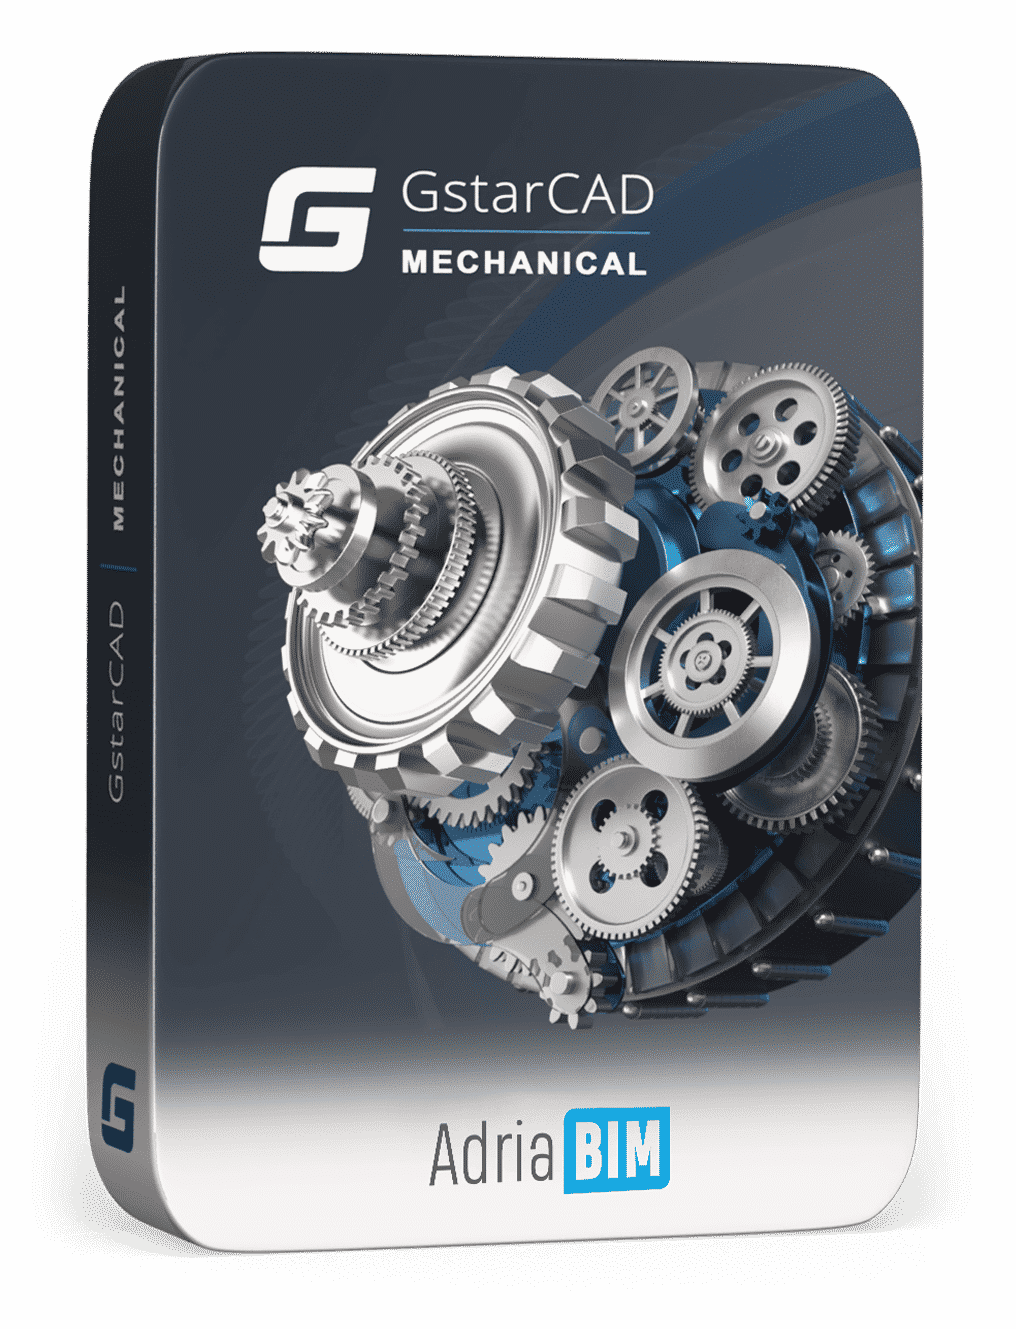 GstarCAD Mechanical